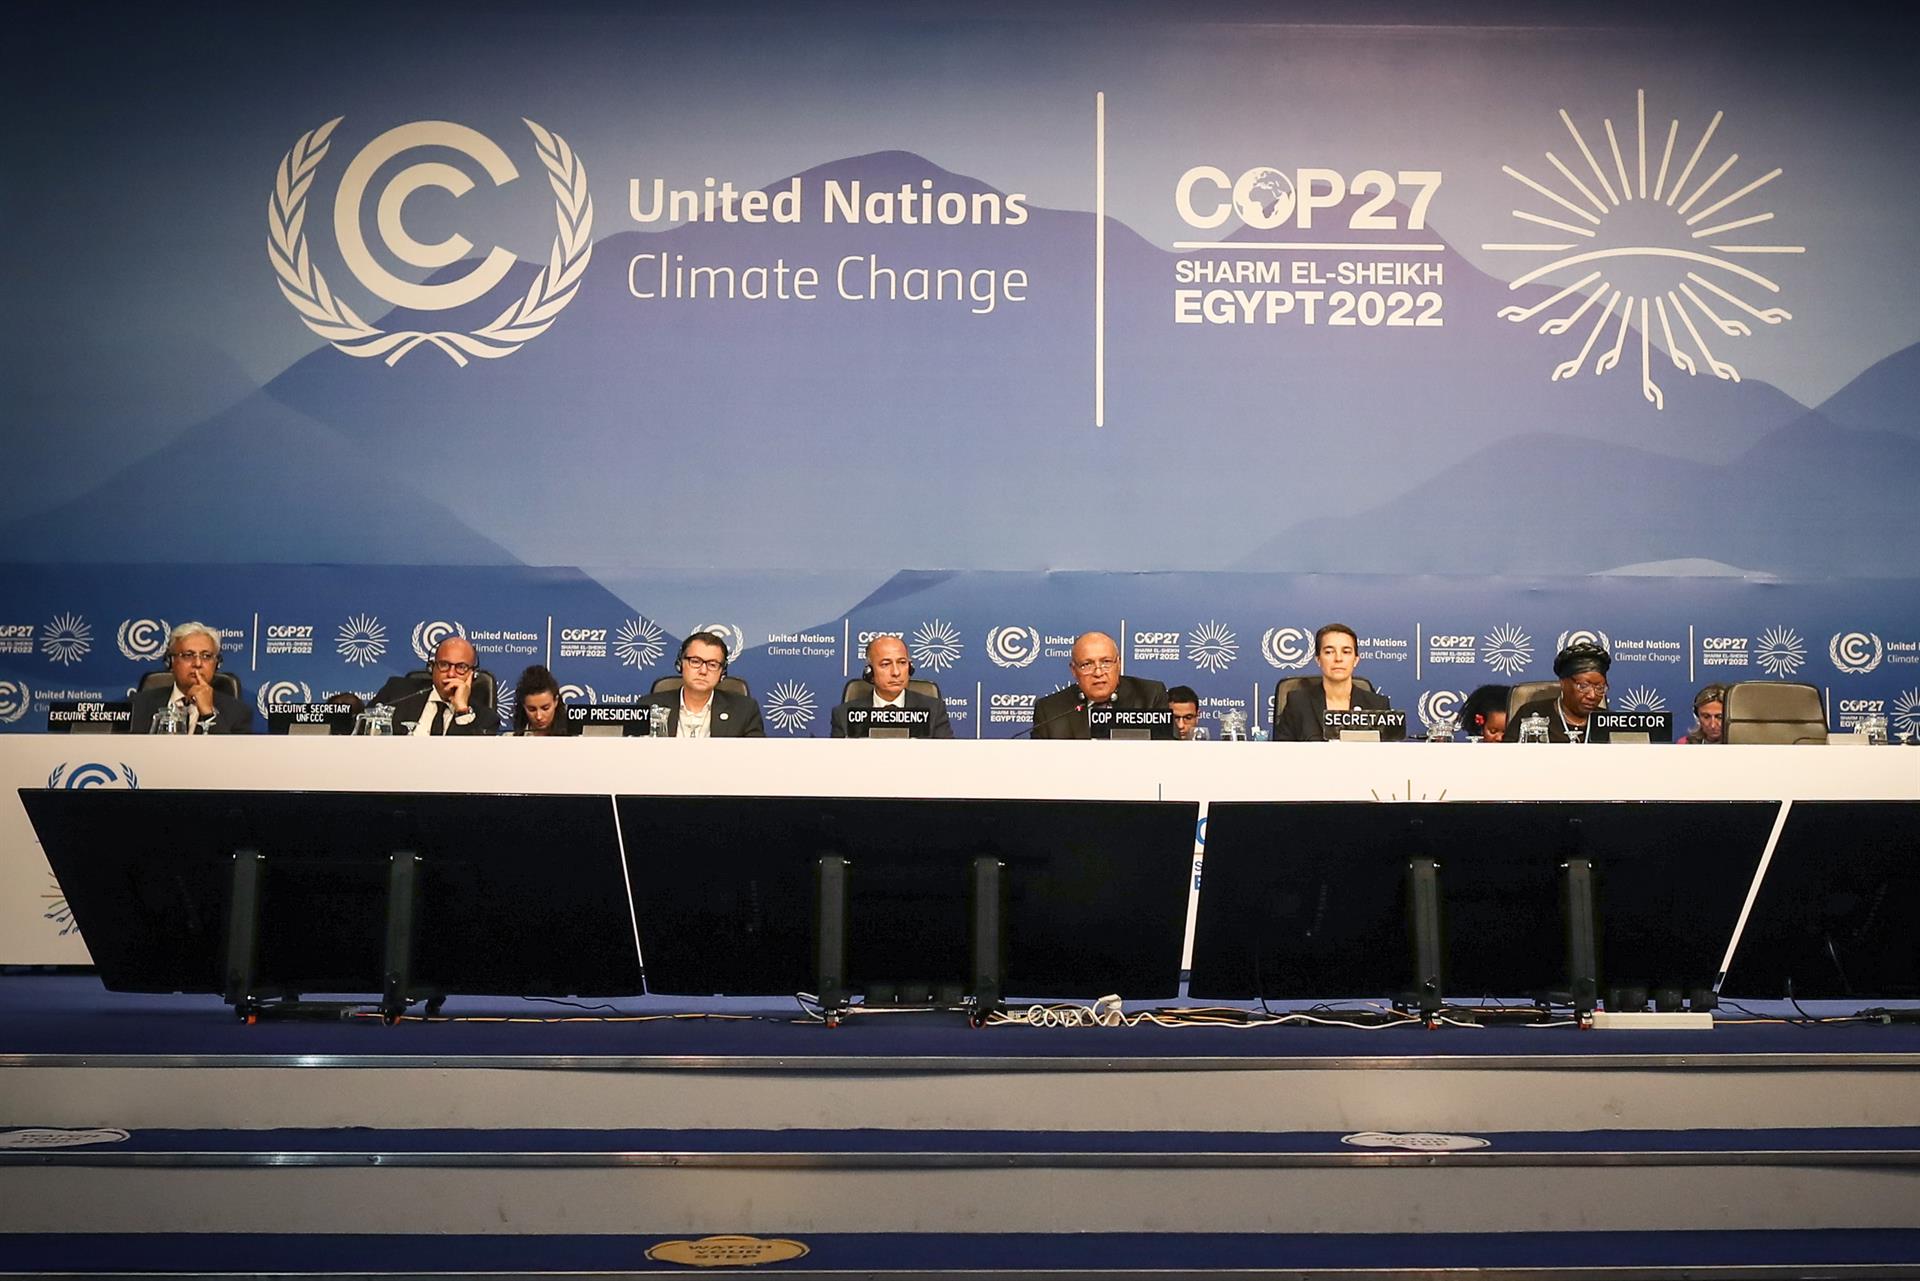 Creus que la COP27 prendrà mesures eficients contra el canvi climàtic?